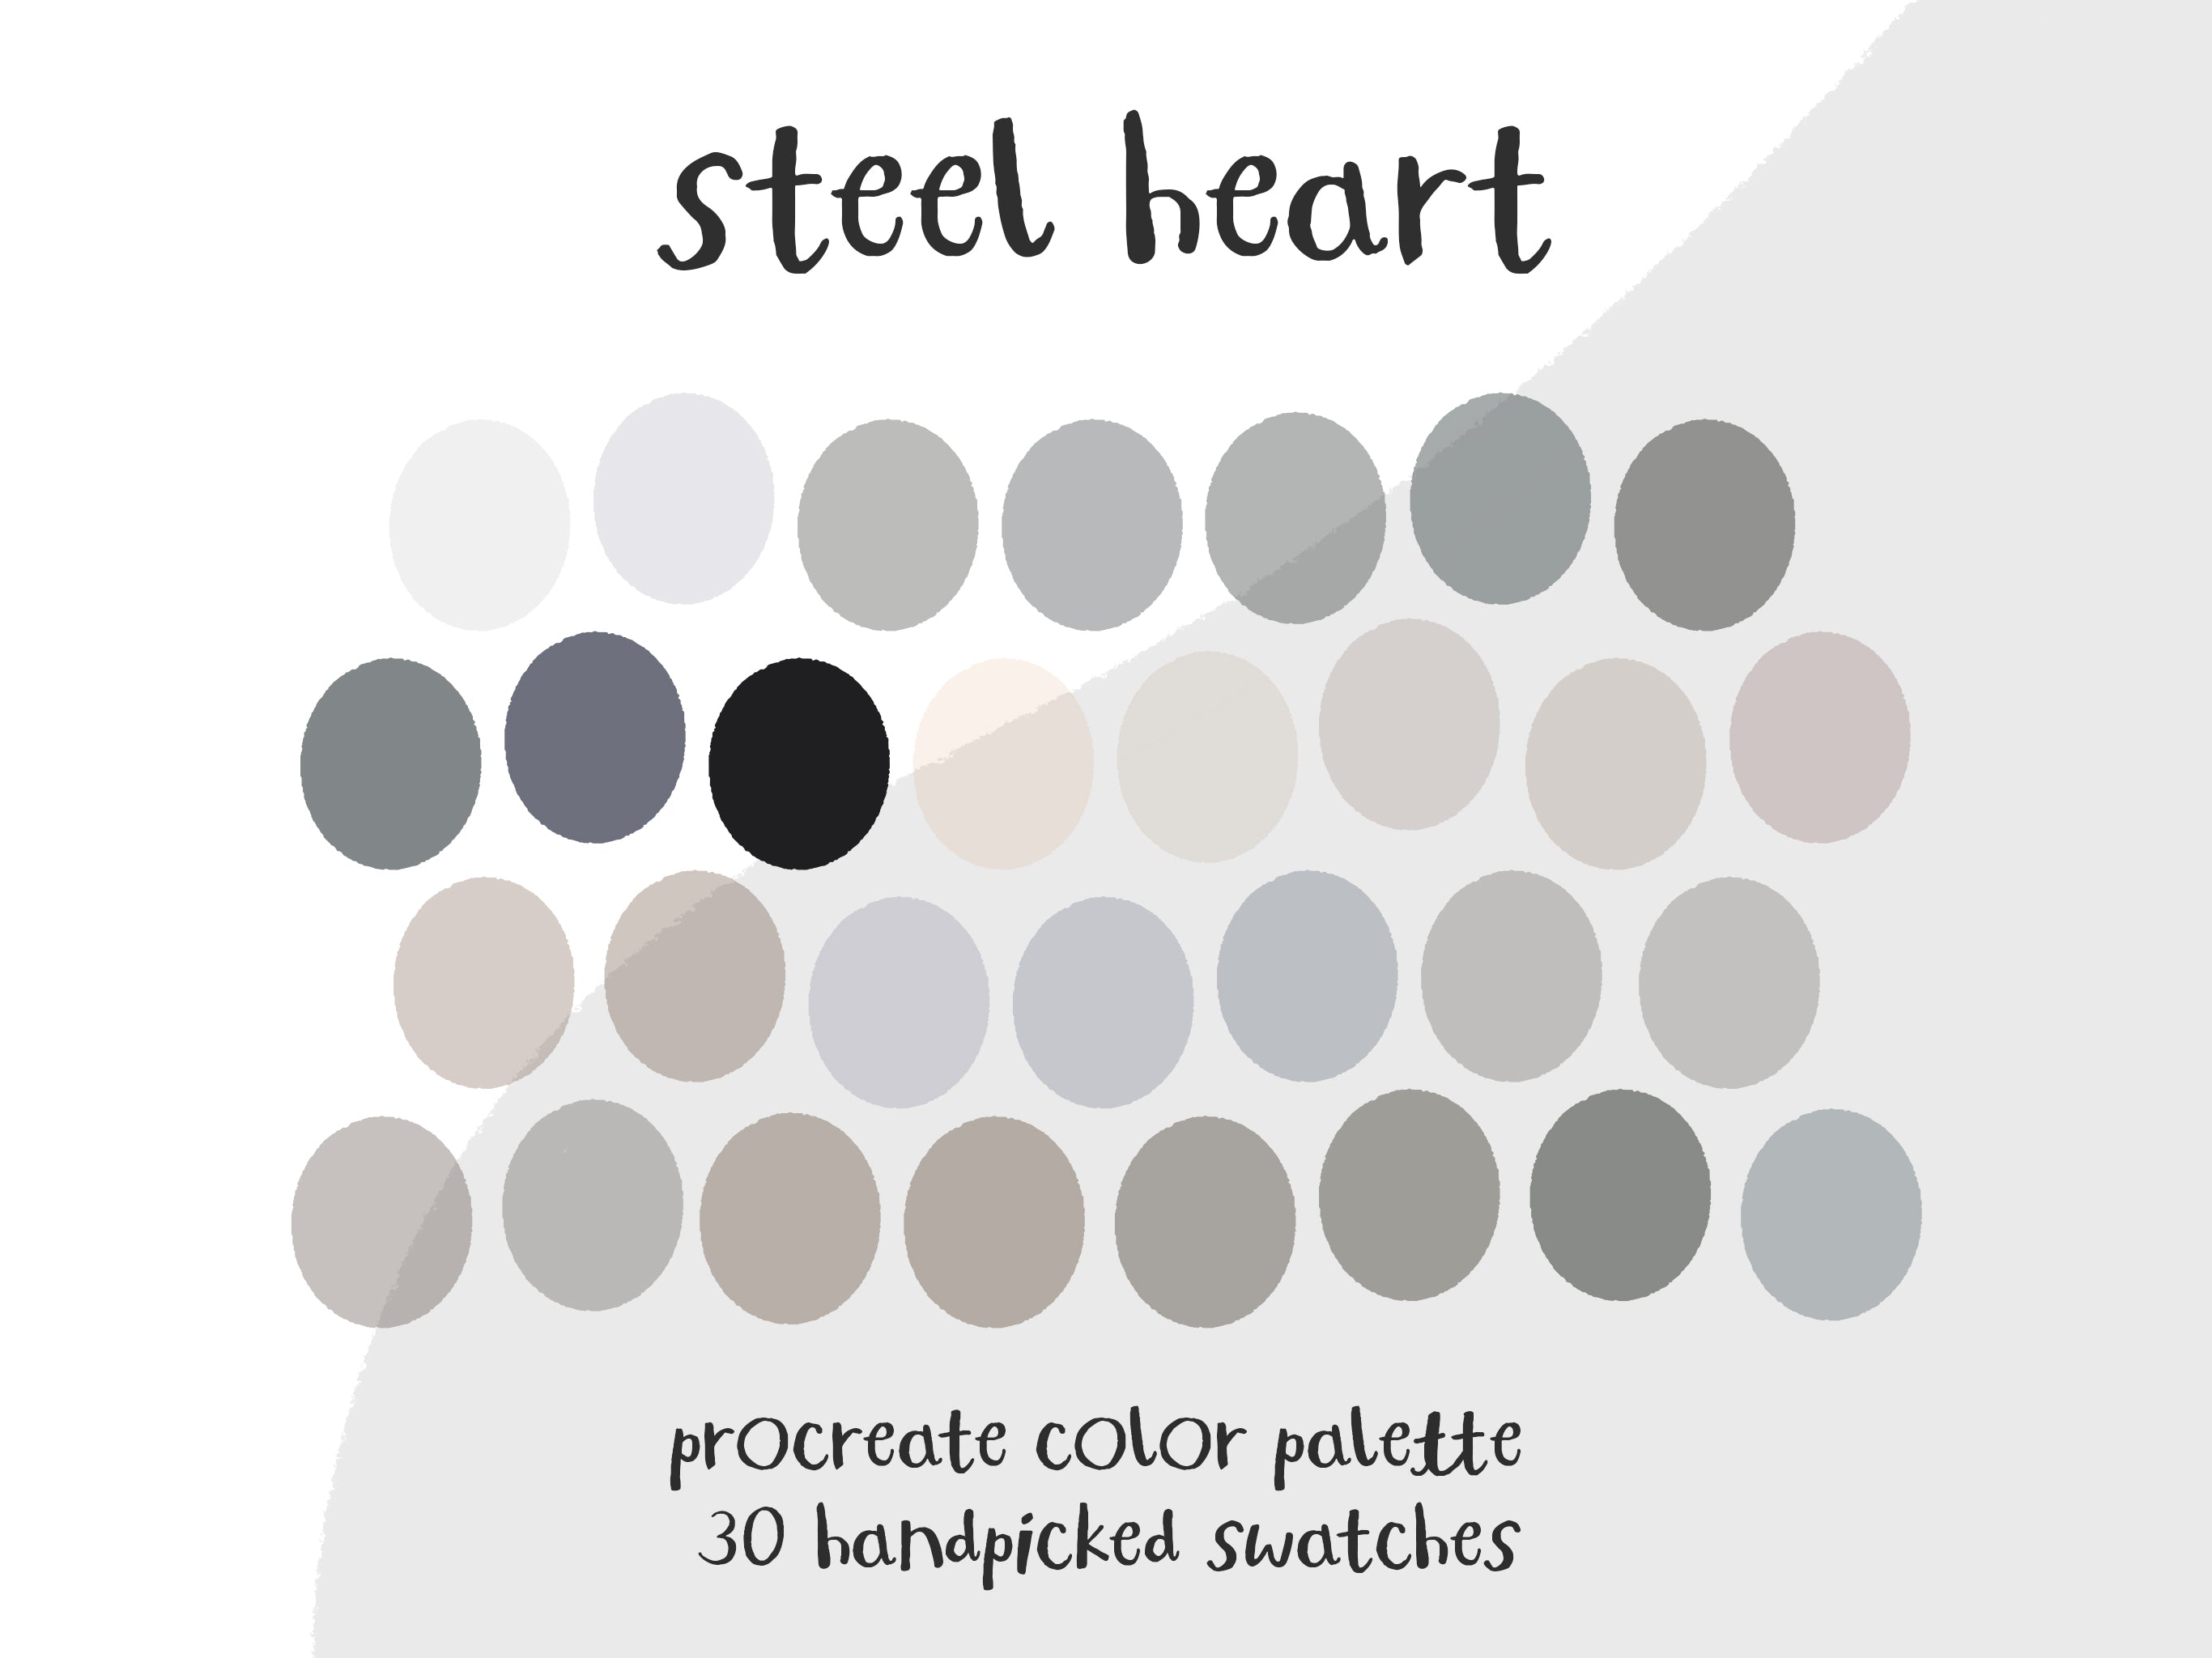 Steel Heart